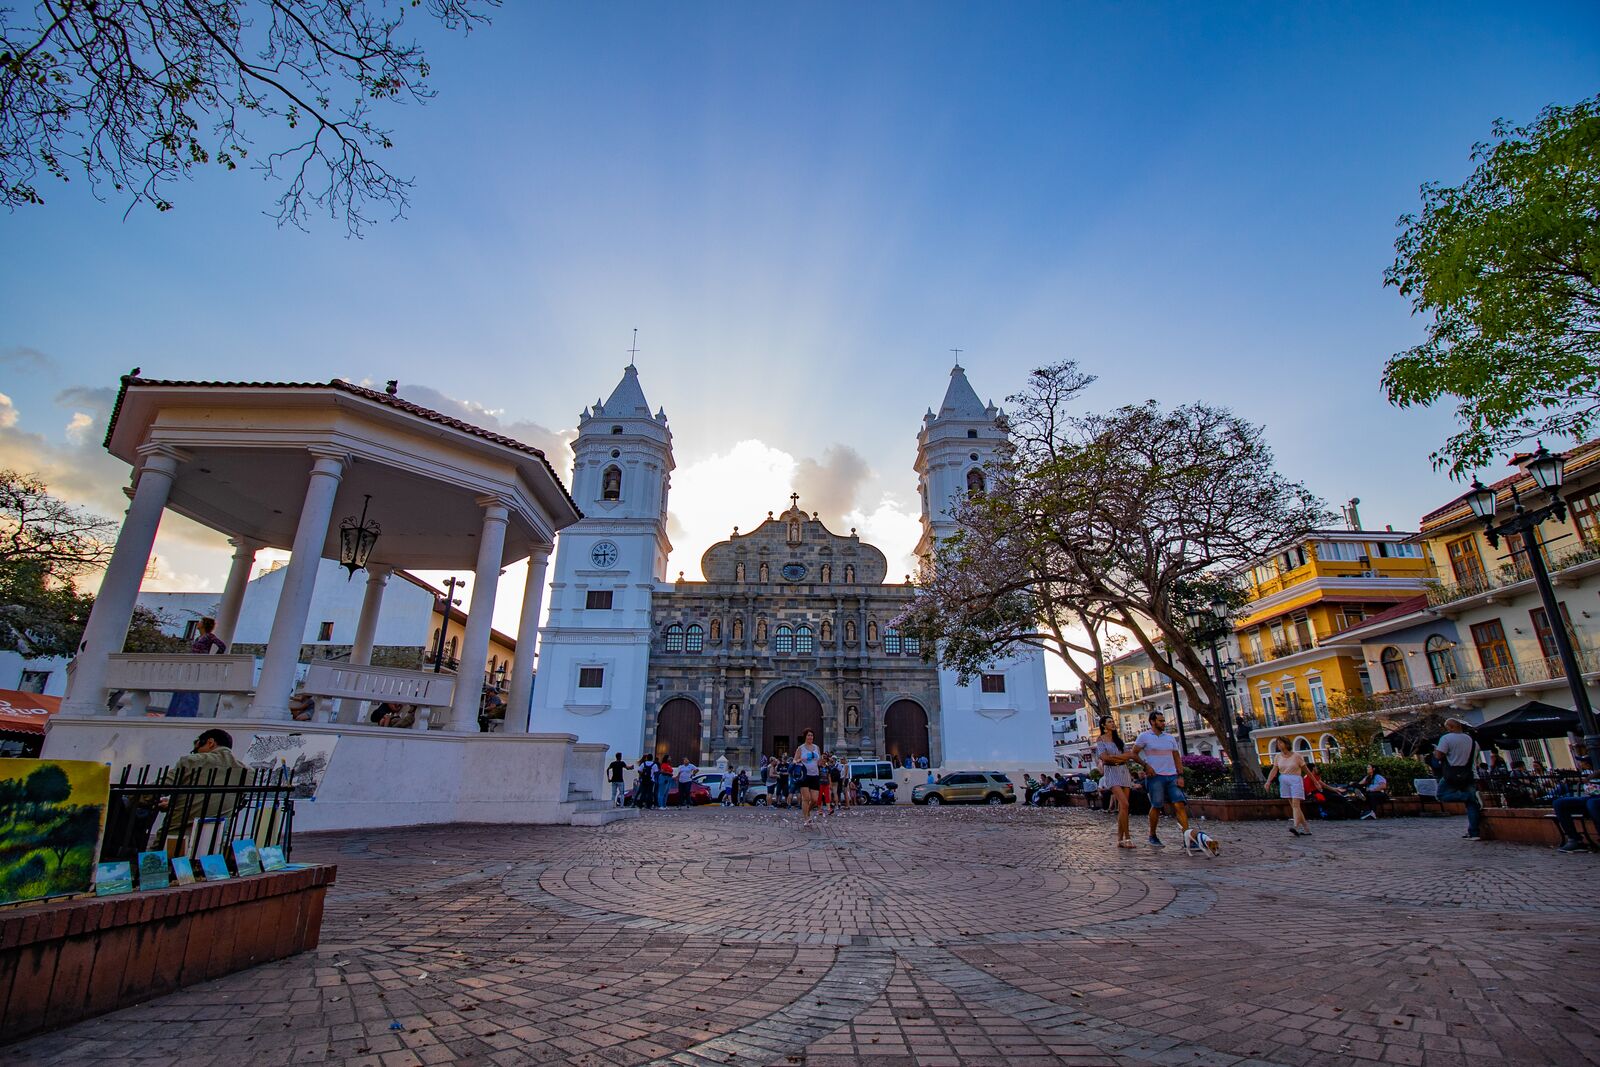 Panama City’s UNESCO World Heritage Site